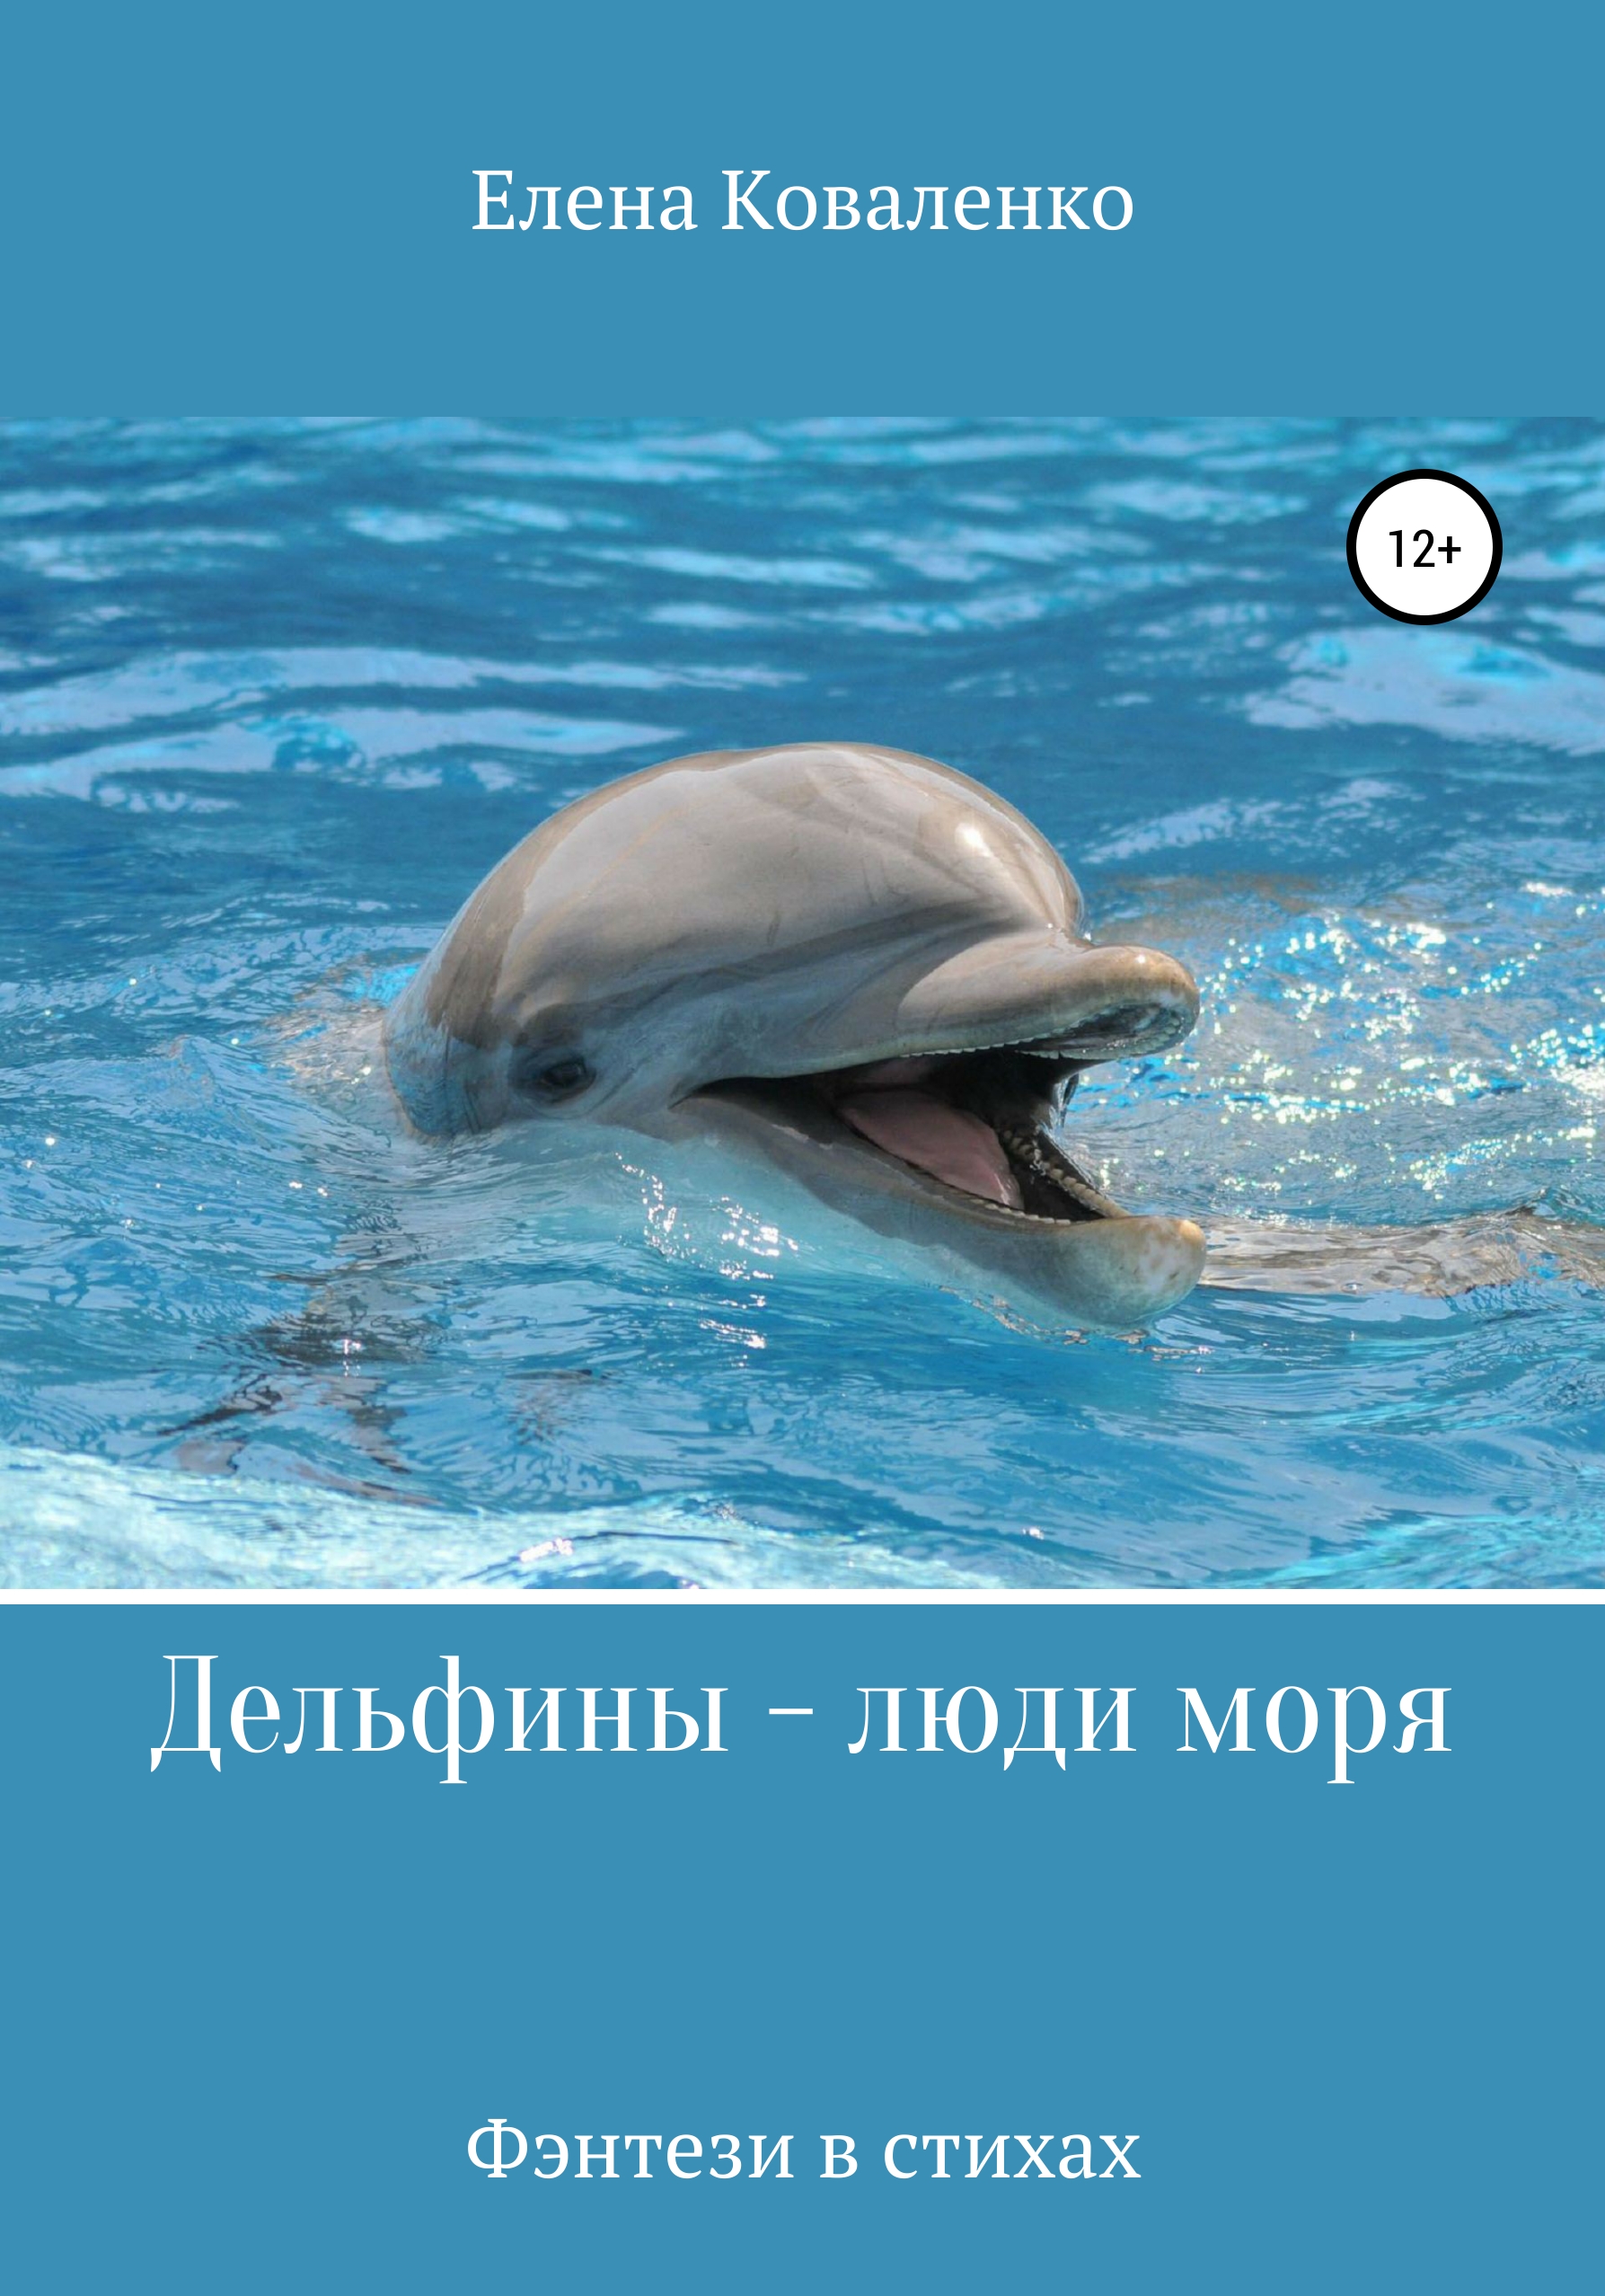 Люди дельфины песня. Дельфины люди моря. Человек Дельфин. Афалина. Дельфин с человеком в море.